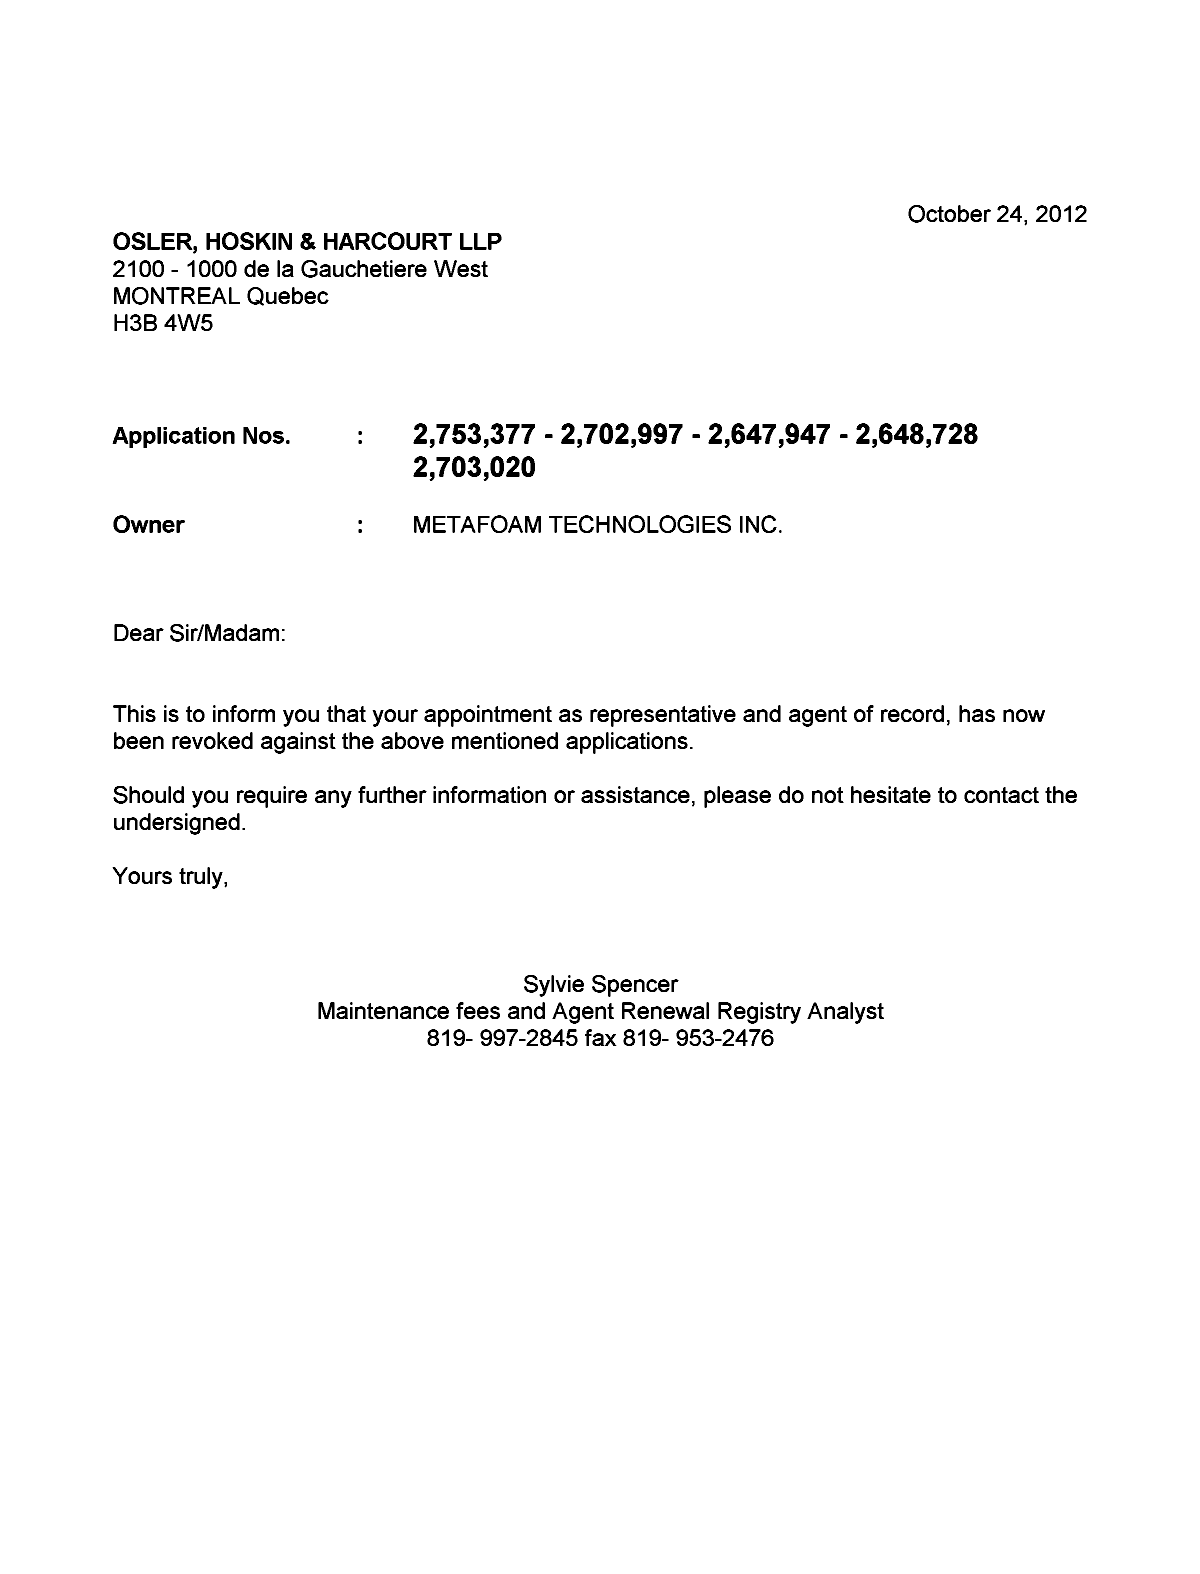 Document de brevet canadien 2702997. Correspondance 20121024. Image 1 de 1